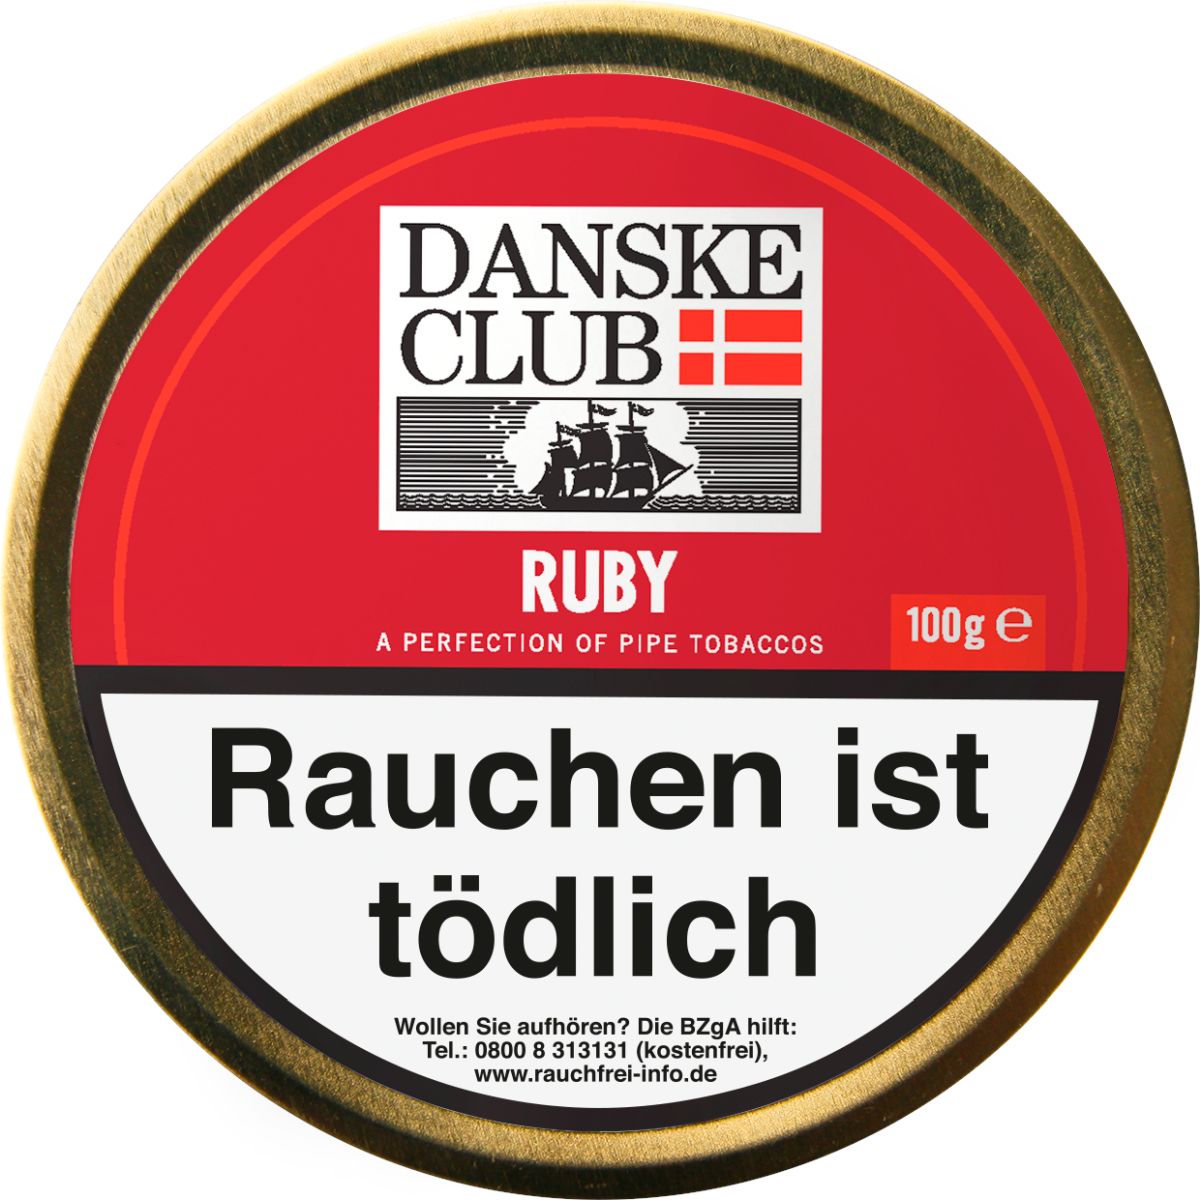 Danske Club Danske Club Ruby bei www.Tabakring.de kaufen